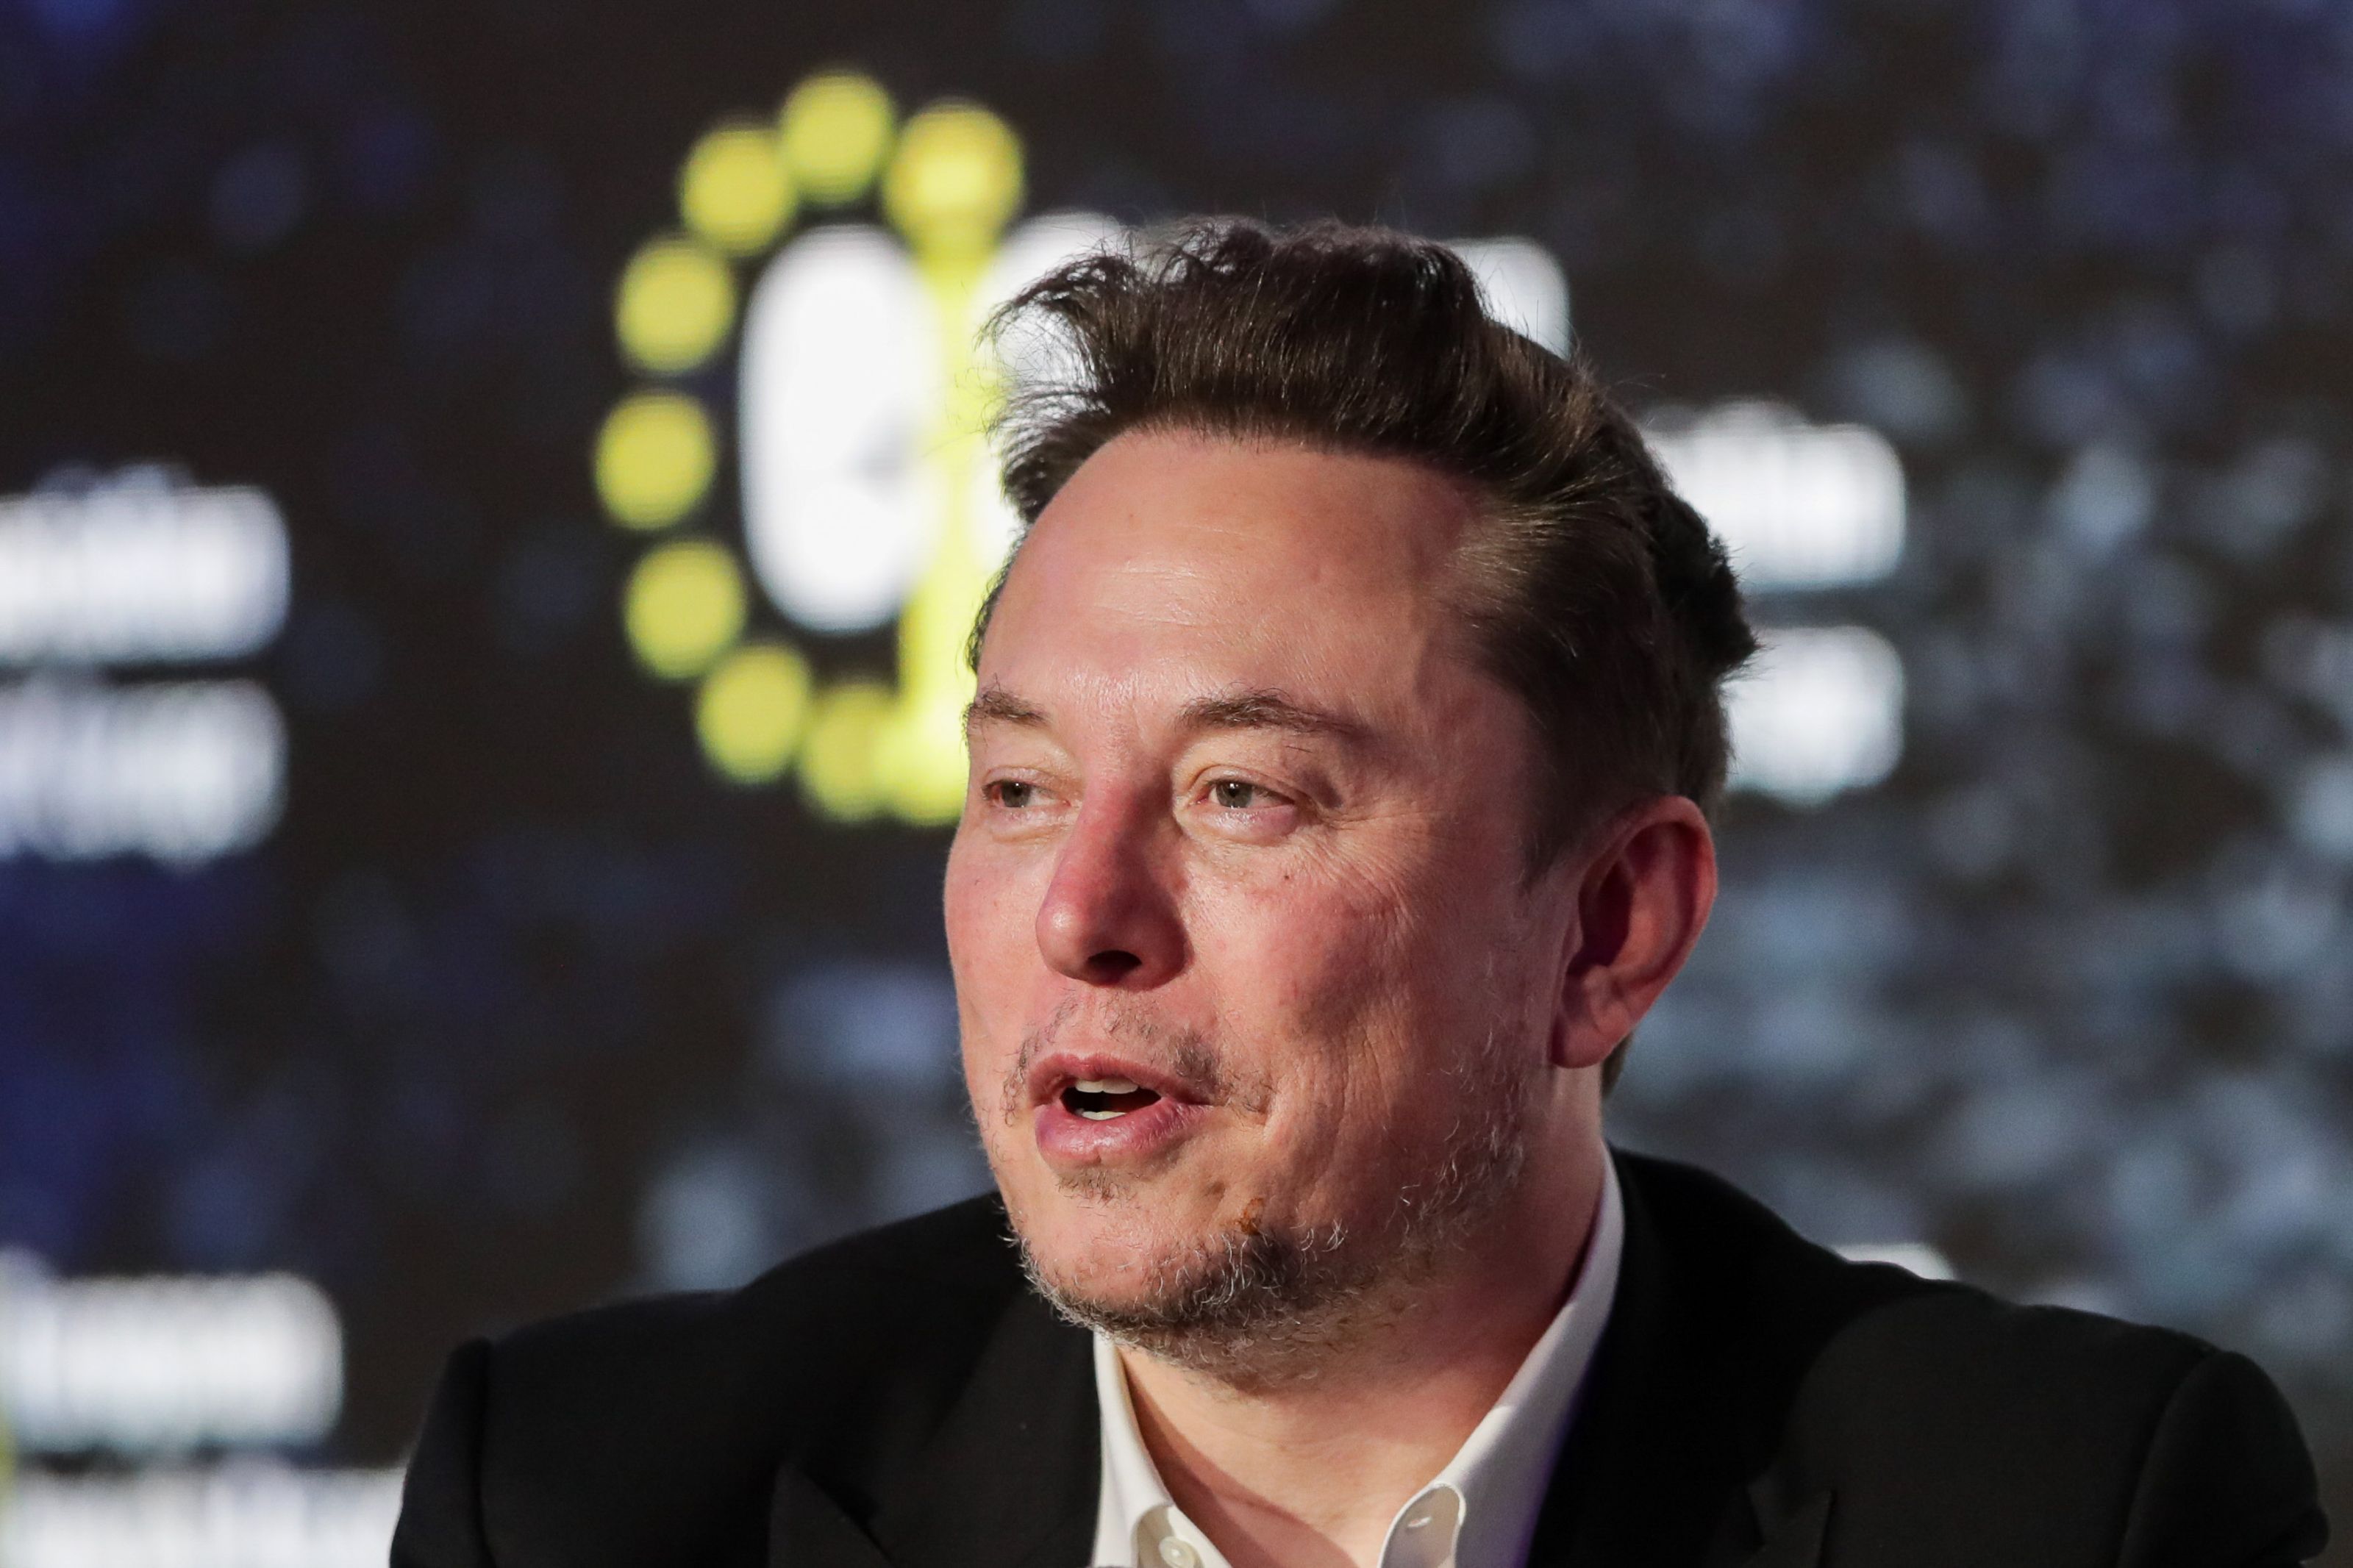 Care este valoarea netă a lui Elon Musk? Află averea uimitoare a CEO-ului Tesla şi SpaceX